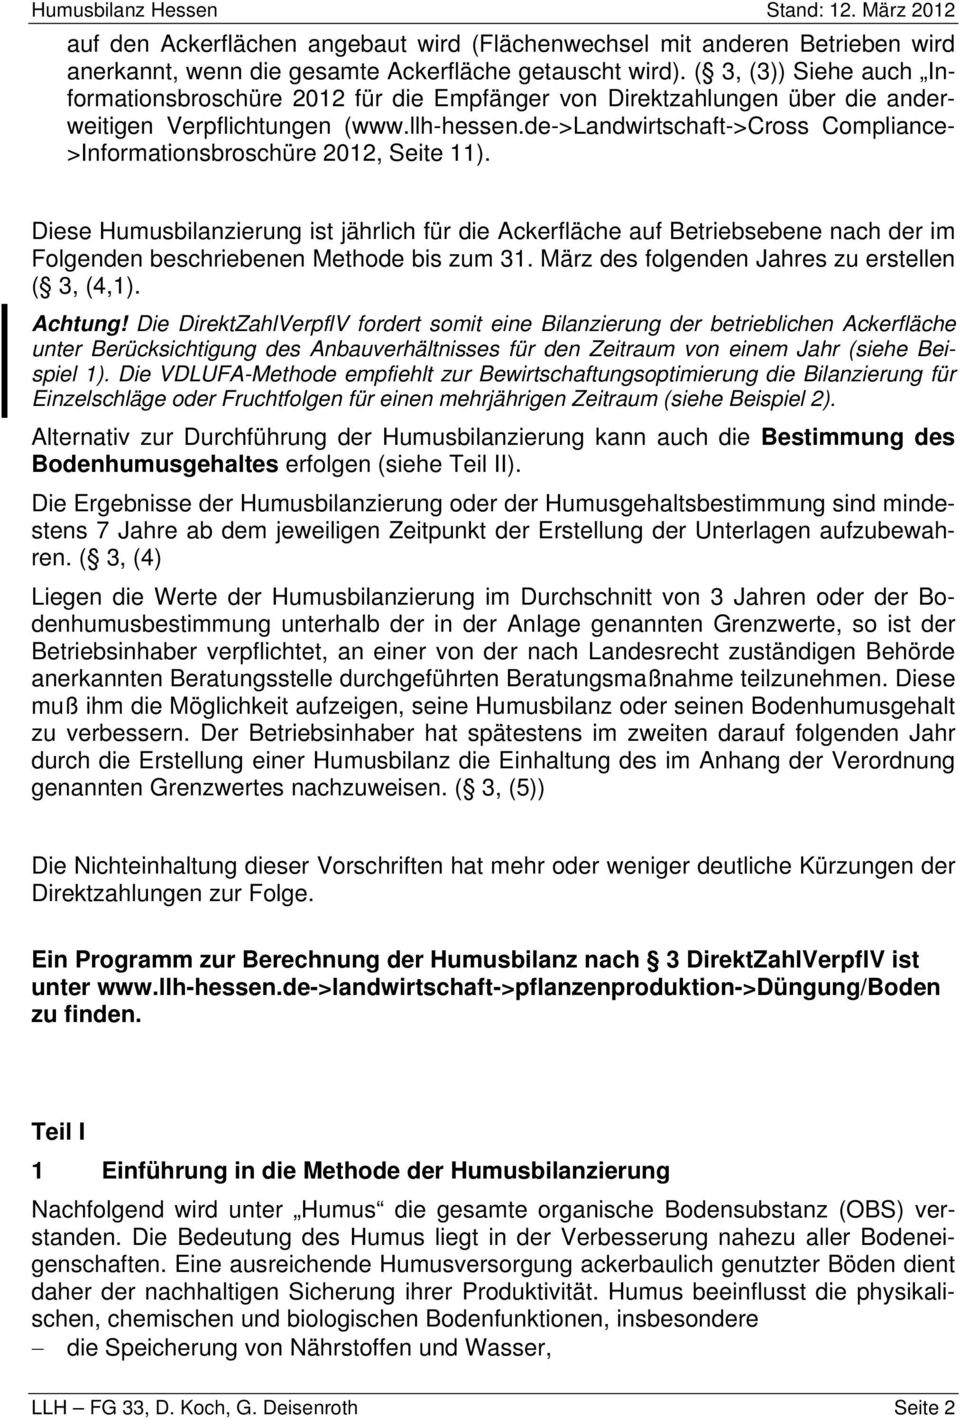 de->landwirtschaft->cross Compliance- >Informationsbroschüre 2012, Seite 11).